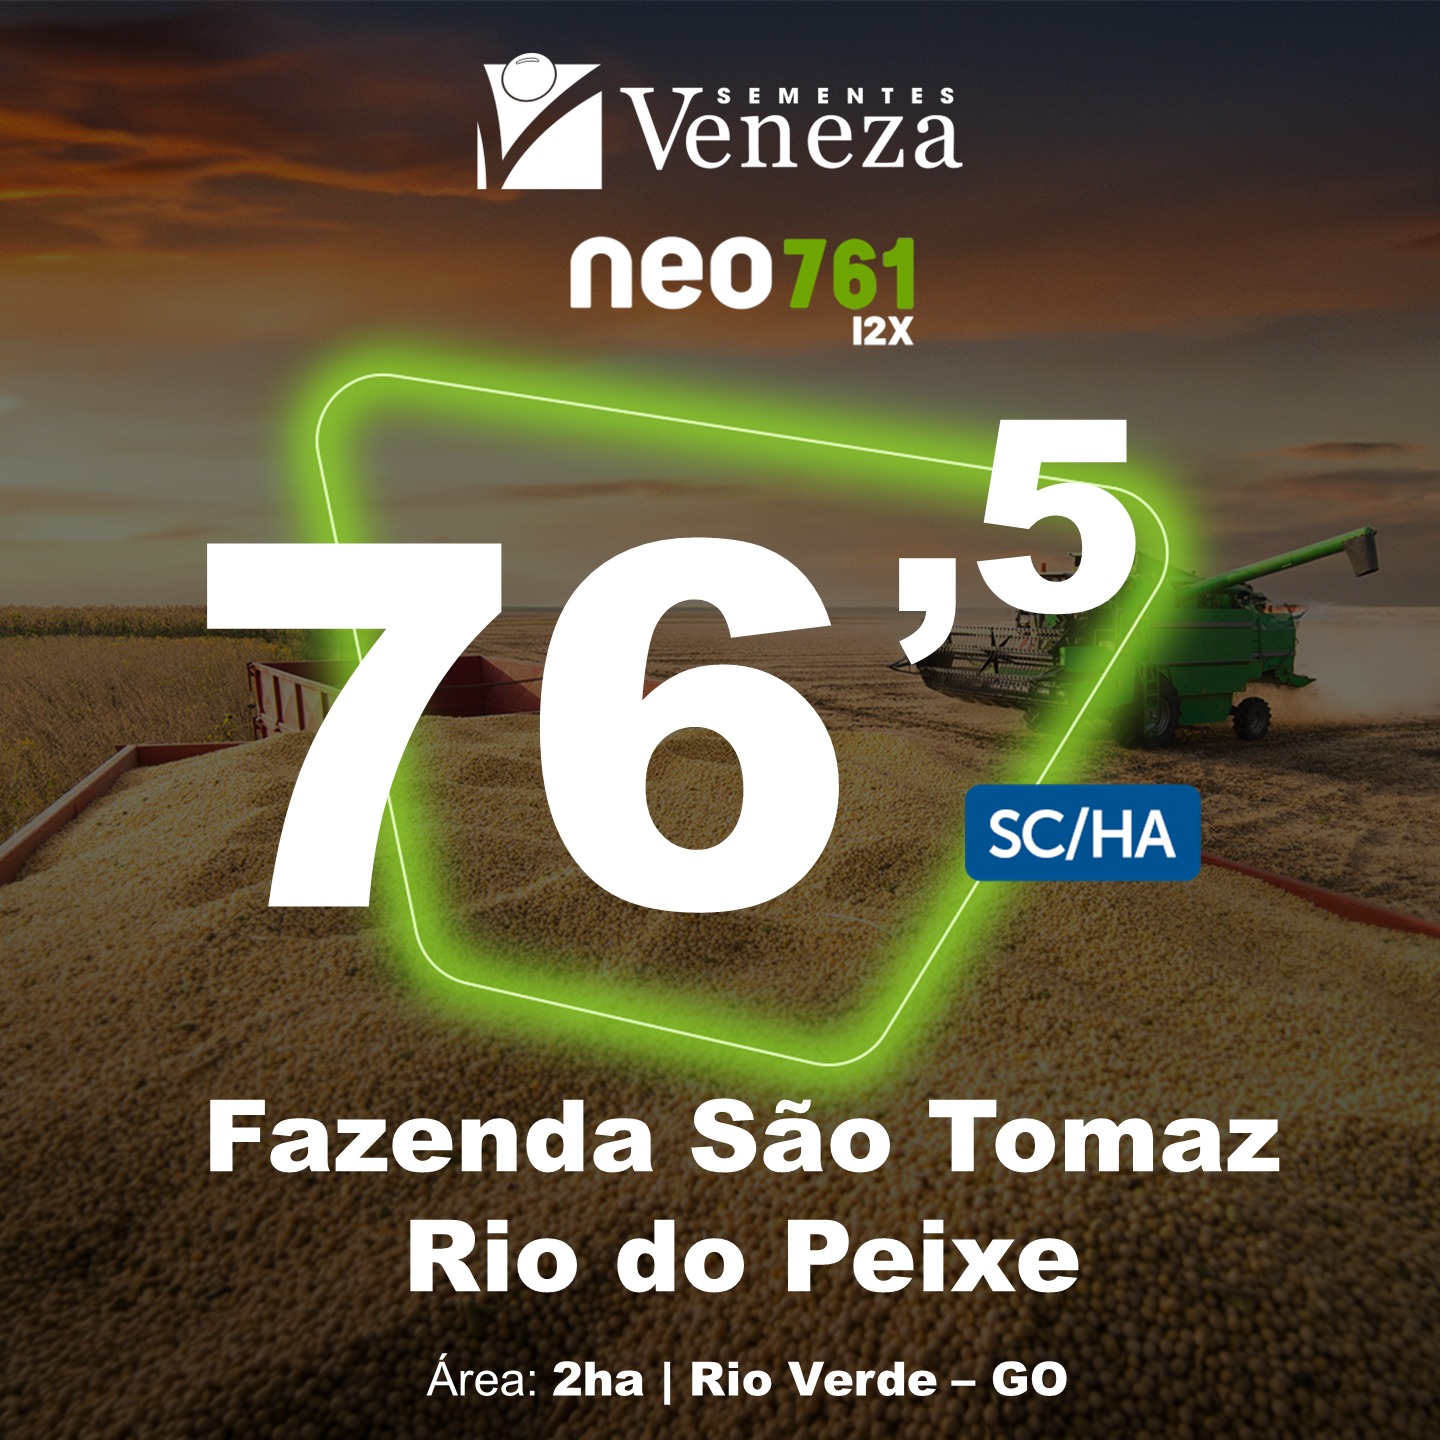 Fazenda São Tomaz Rio do Peixe – Neo 761